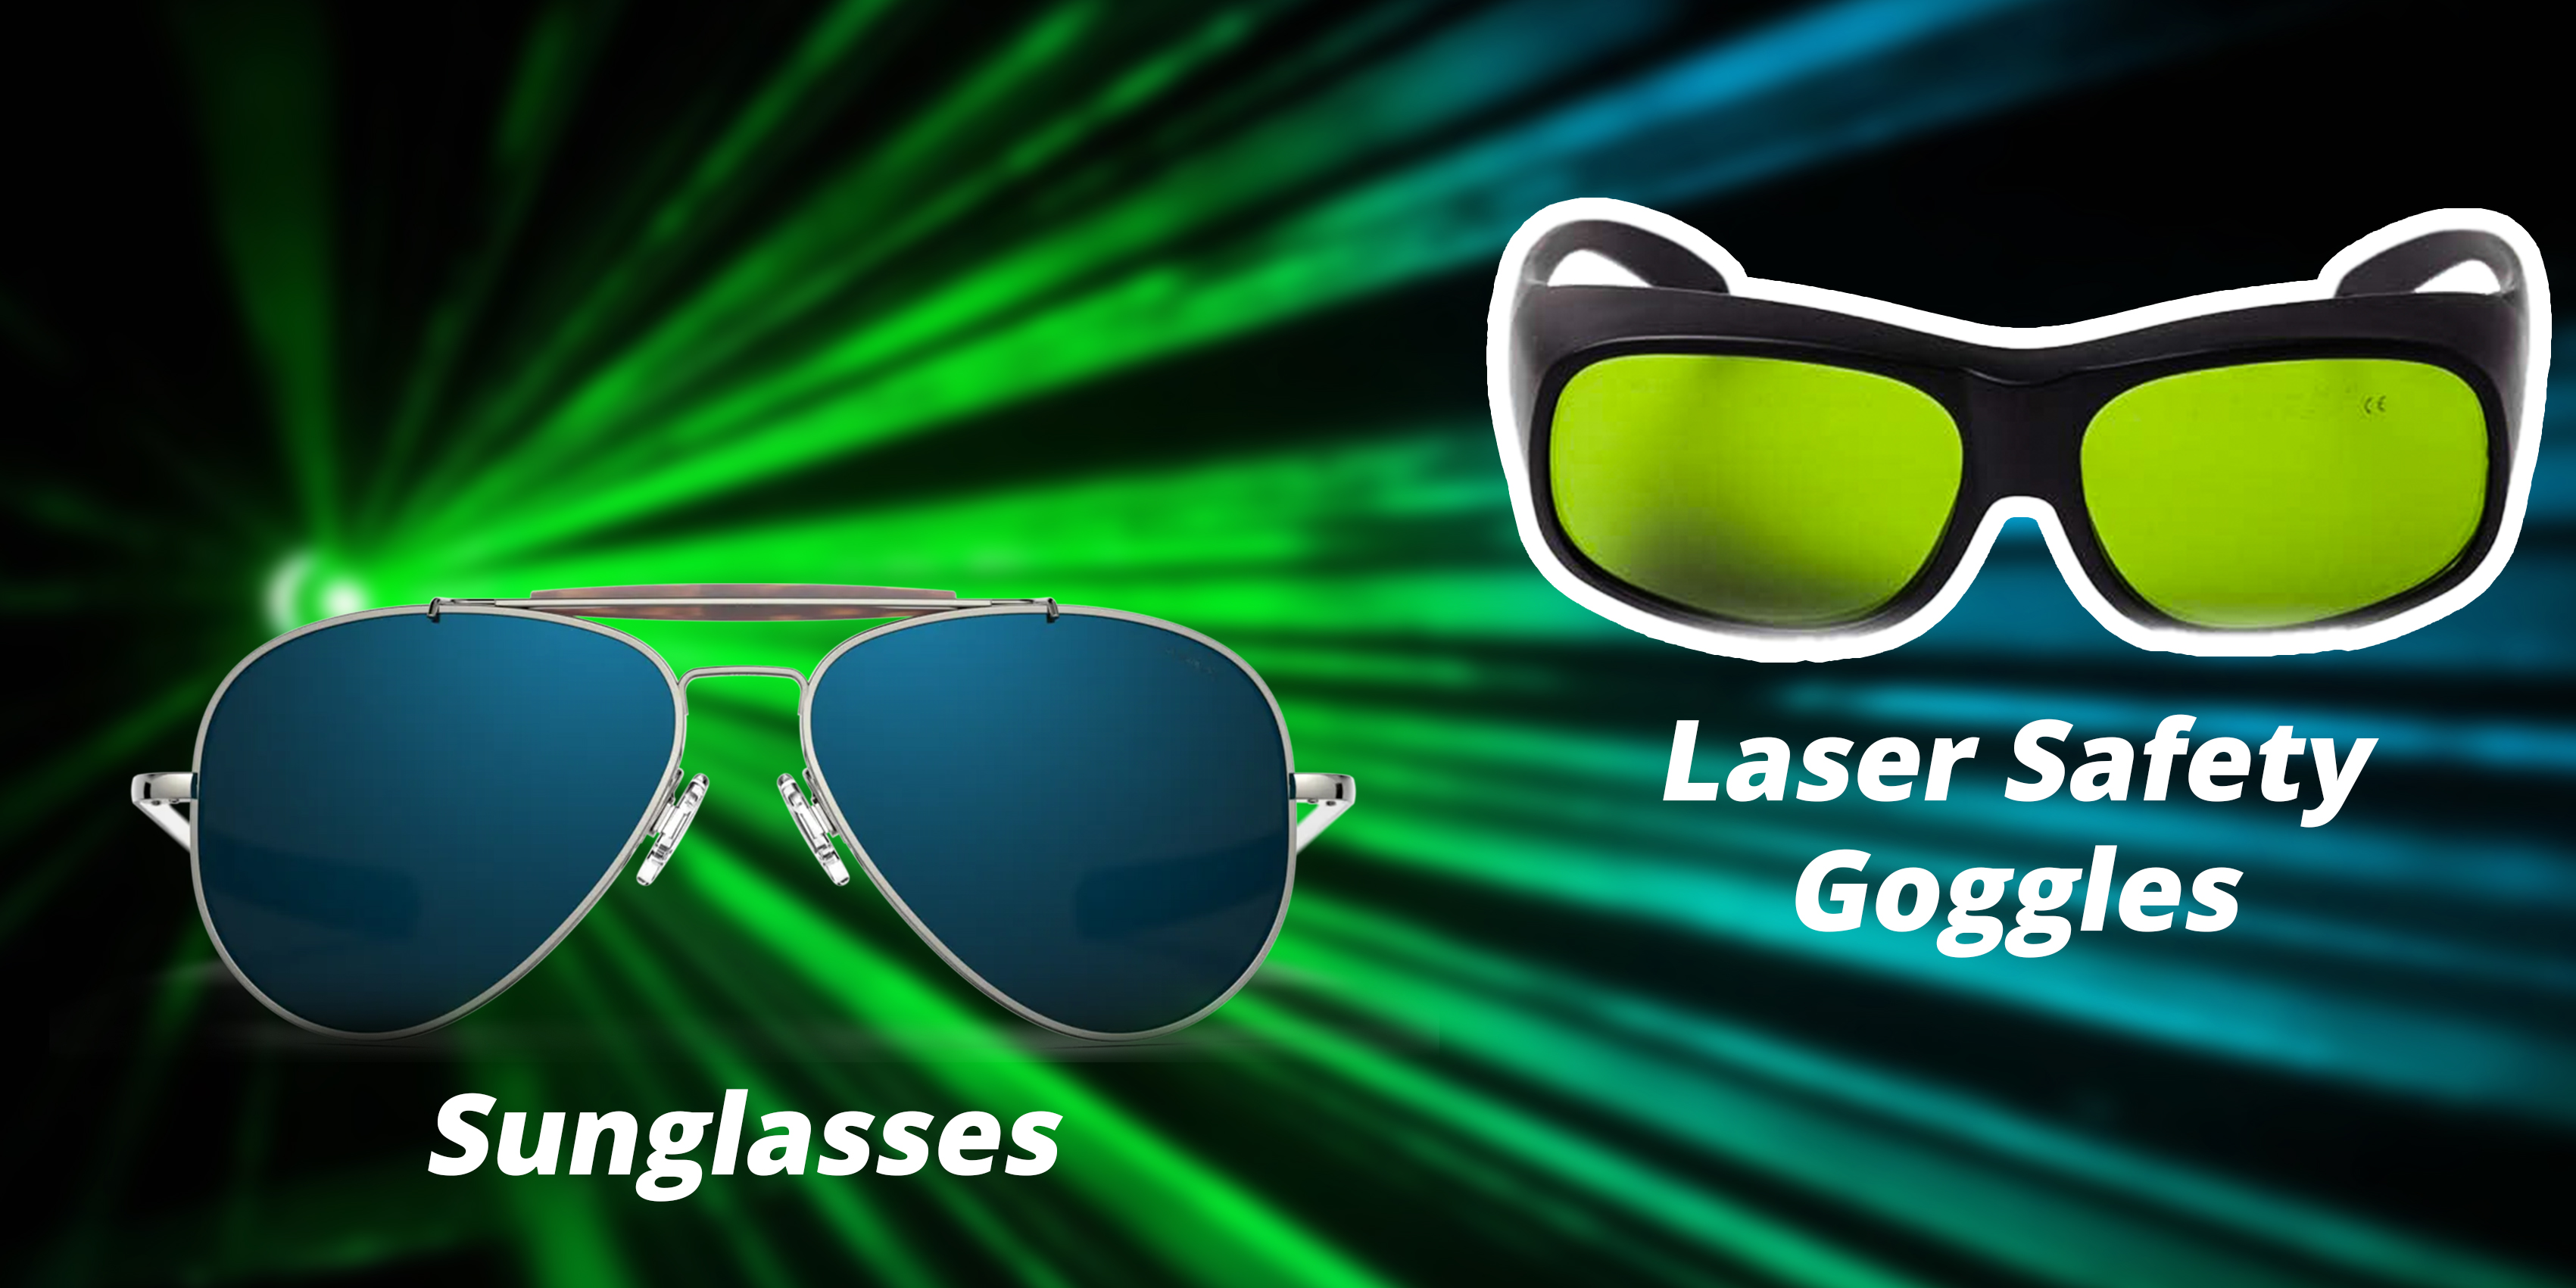 Okulary przeciwsłoneczne czy okulary laserowe: które wybrać do ochrony przed laserem?